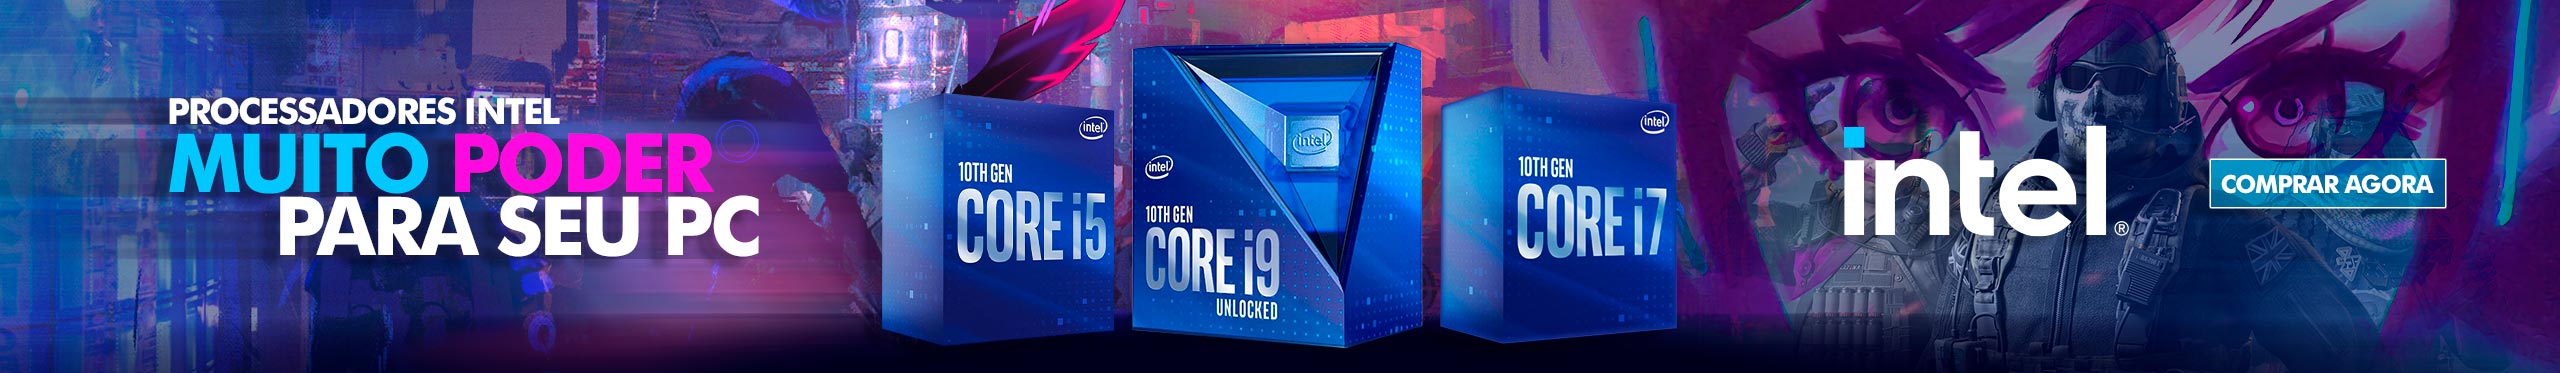 Intel - Muito poder para o seu PC